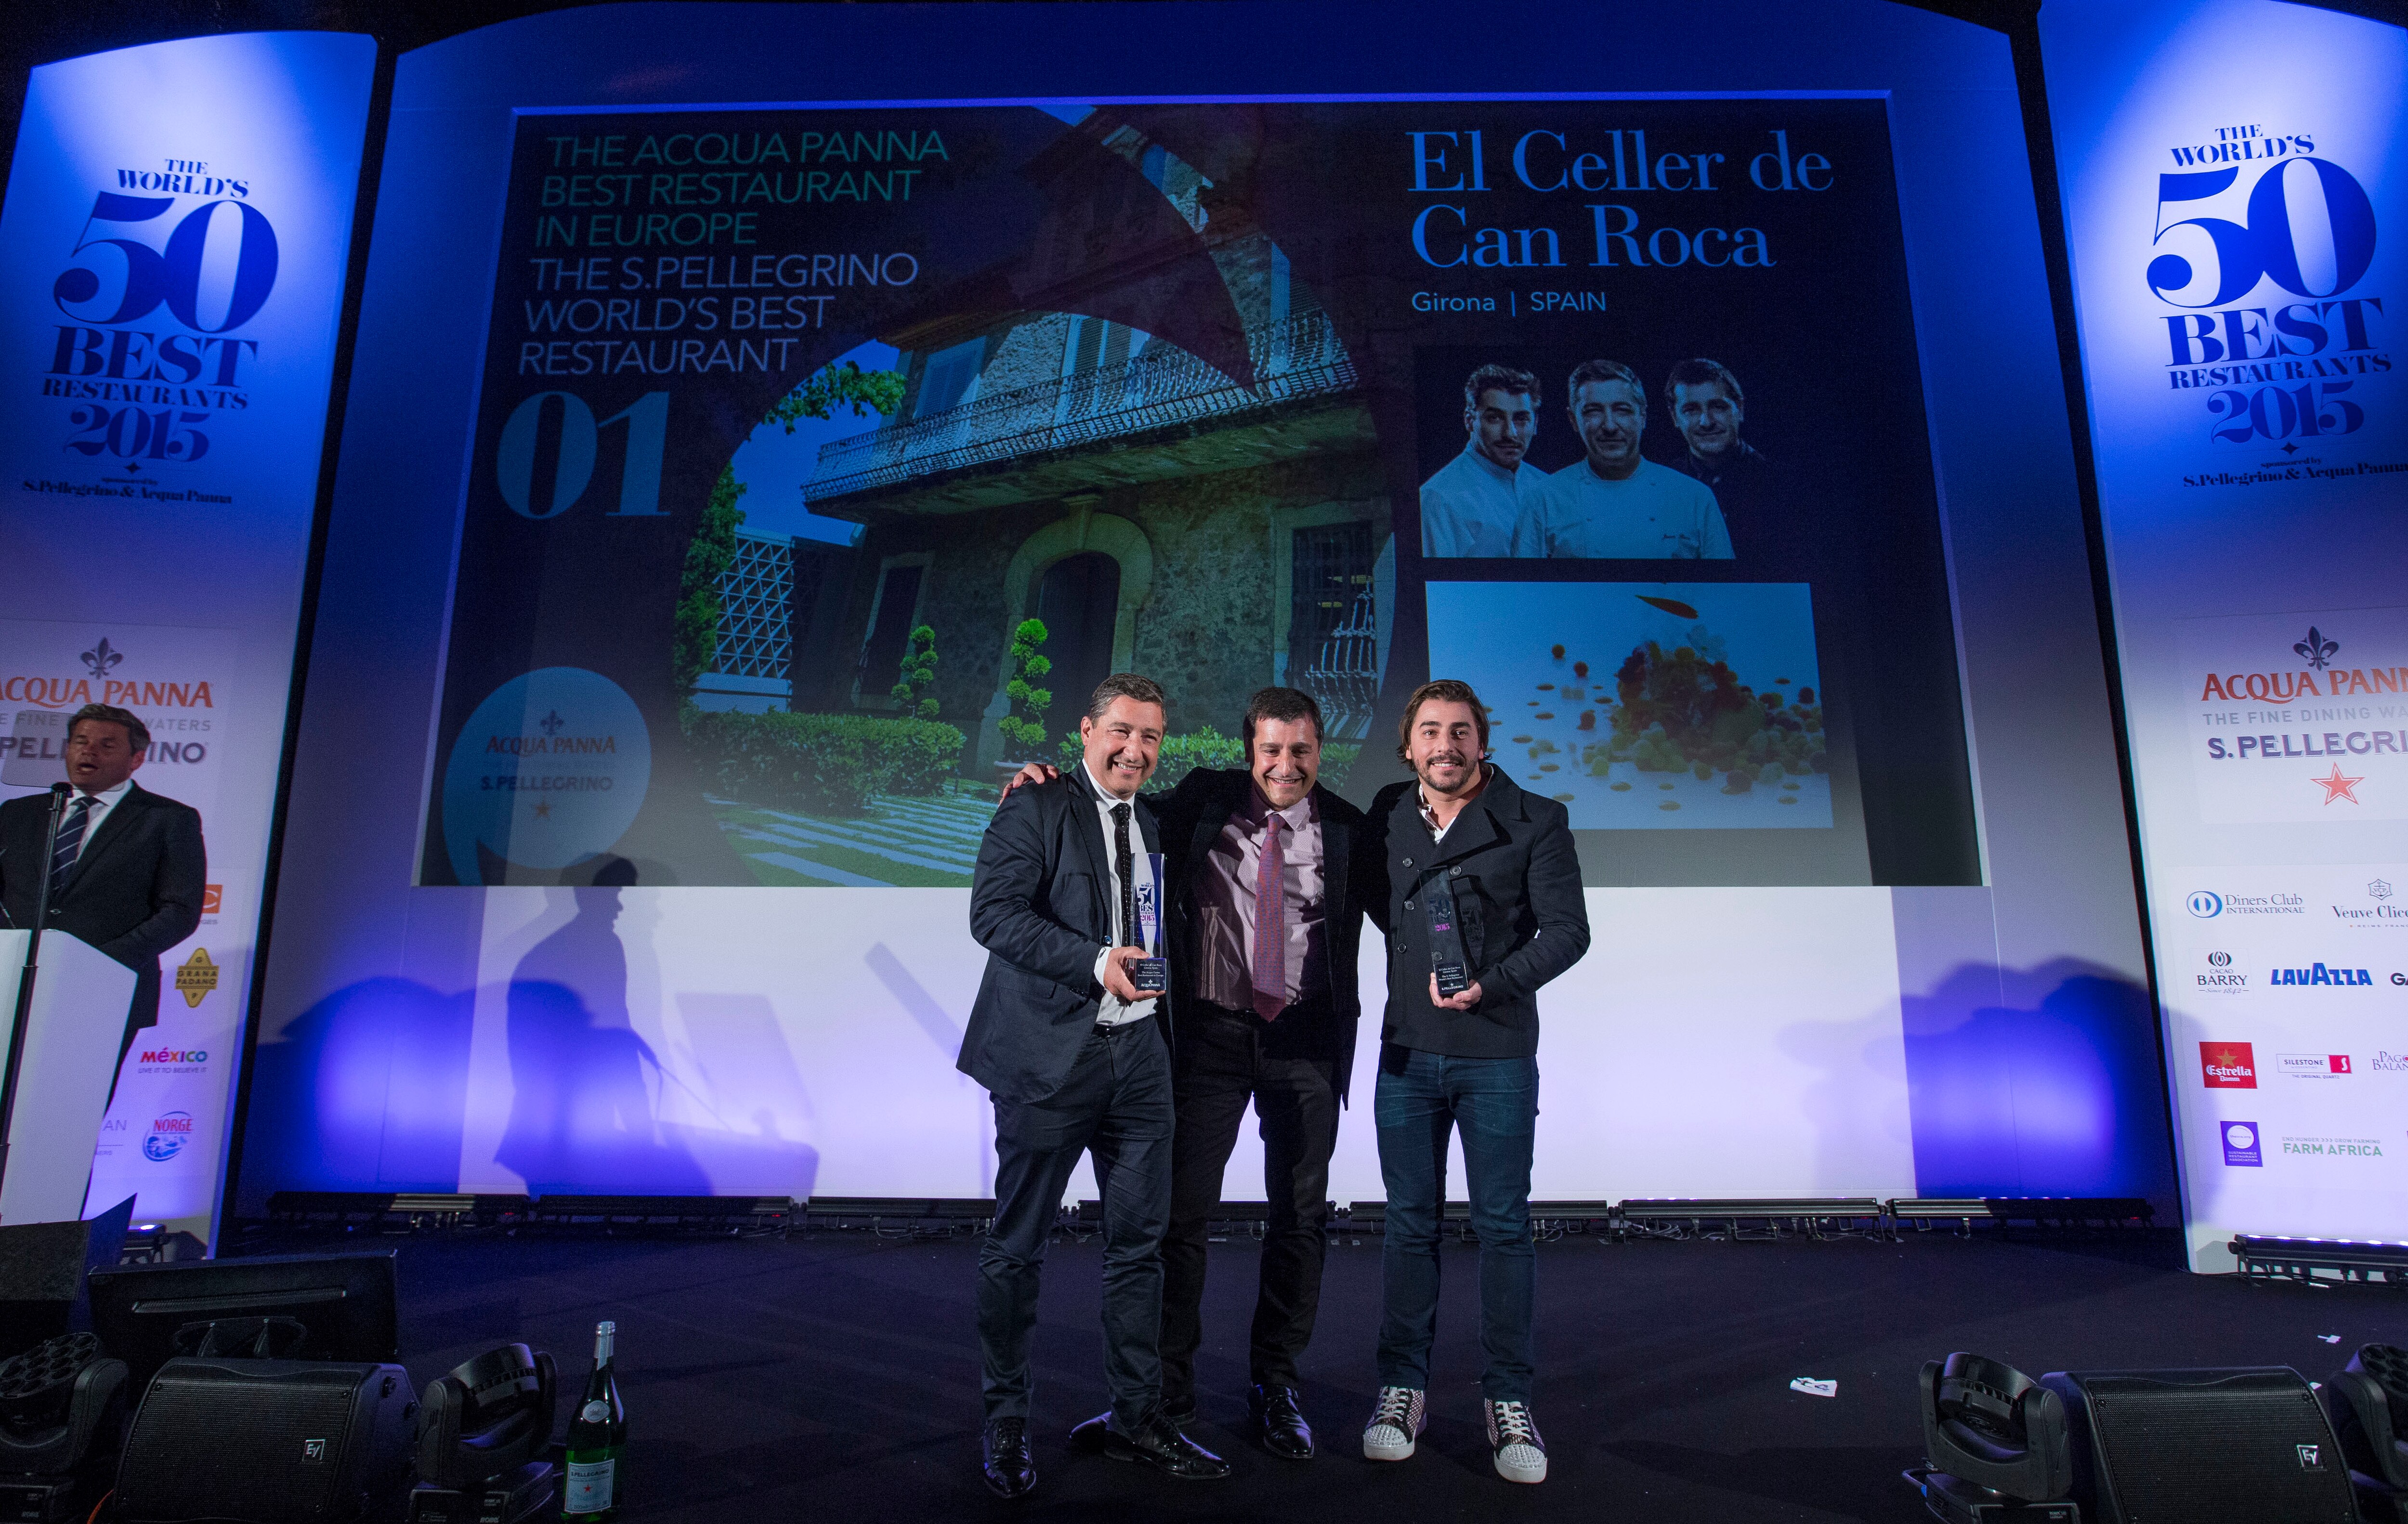 Fotografía de los hermanso roca recogiendo el premio a El Celler de Can Roca mejor restaurante del mundo 2015 BBVA